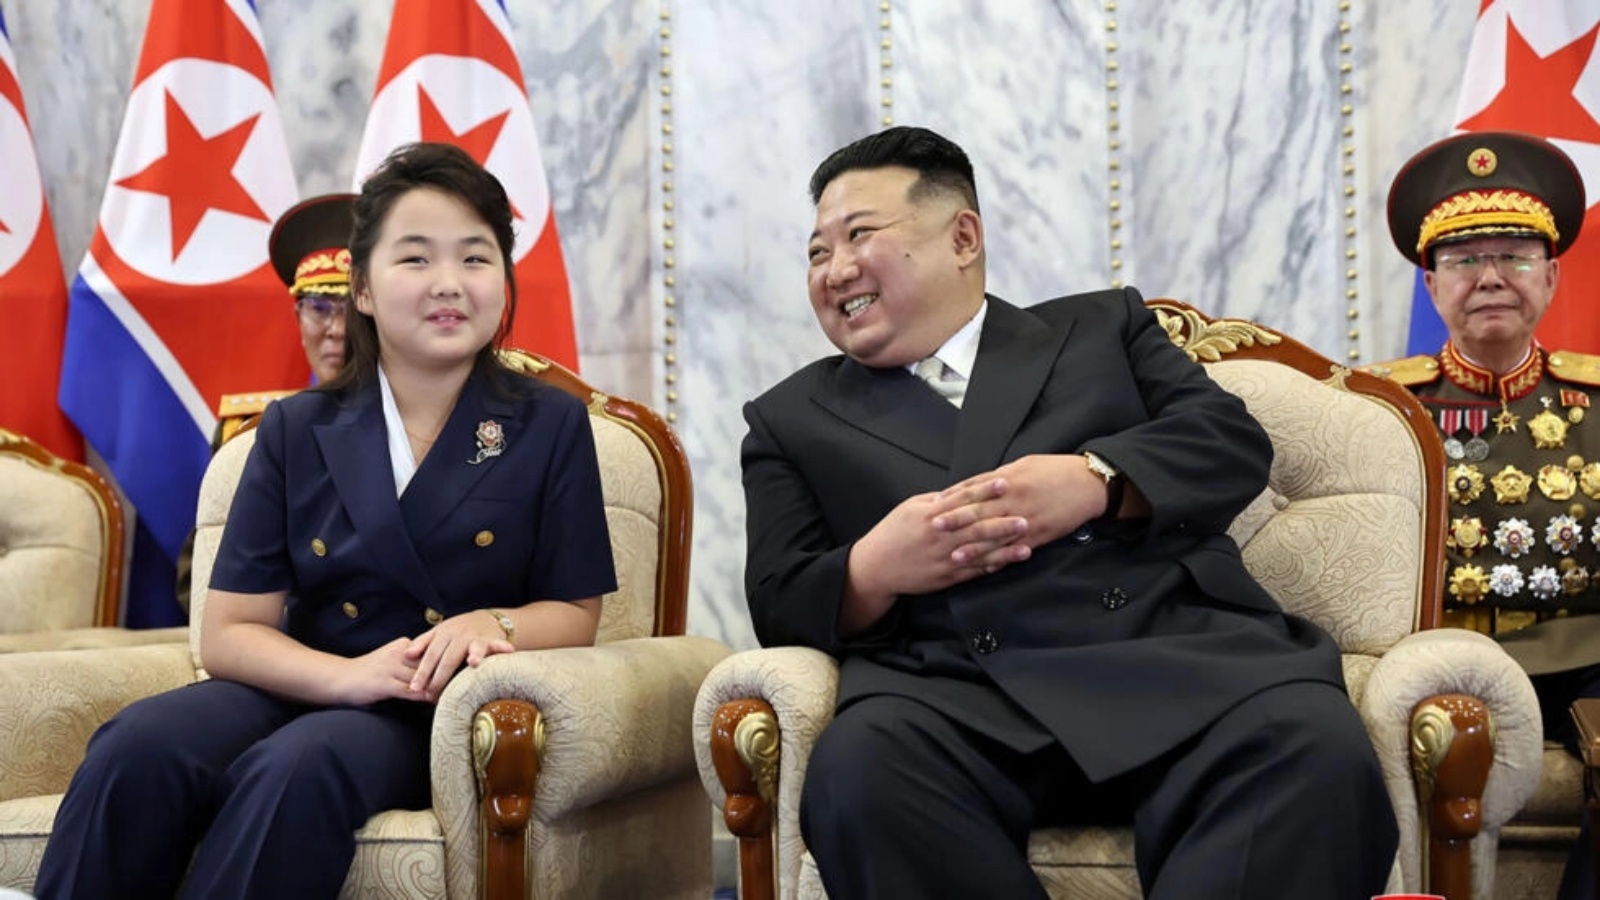 كيم جونغ أون وابنته جو إي خلال استعراض شبه عسكري في بيونغ يانغ بمناسبة الذكرى الخامسة والسبعين لتأسيس البلد. صورة ملتقطة في 8 أيلول (سبتمبر) 2023 وزّعتها وكالة الإعلام المركزية الكورية الشمالية في 9 أيلول (سبتمبر)